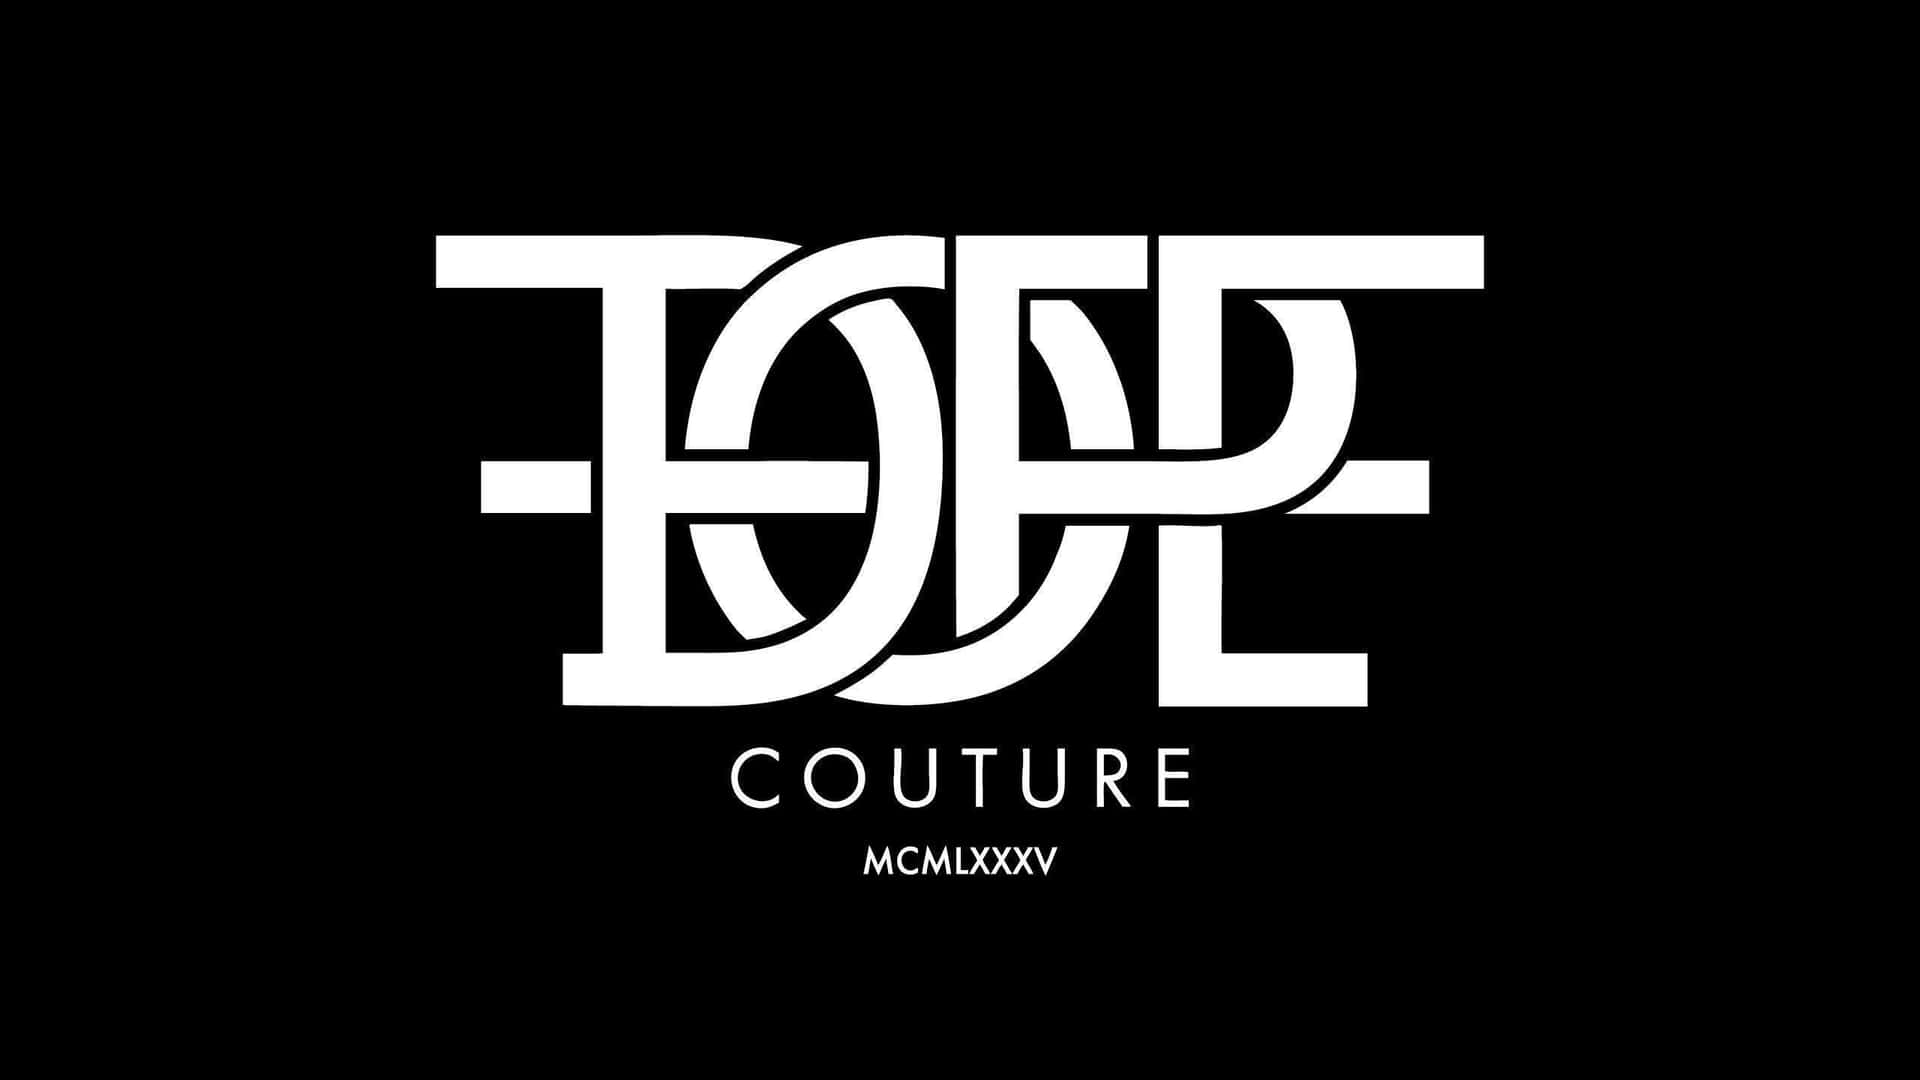 Ensvartvit Logotyp För Modevarumärket Couture. Wallpaper